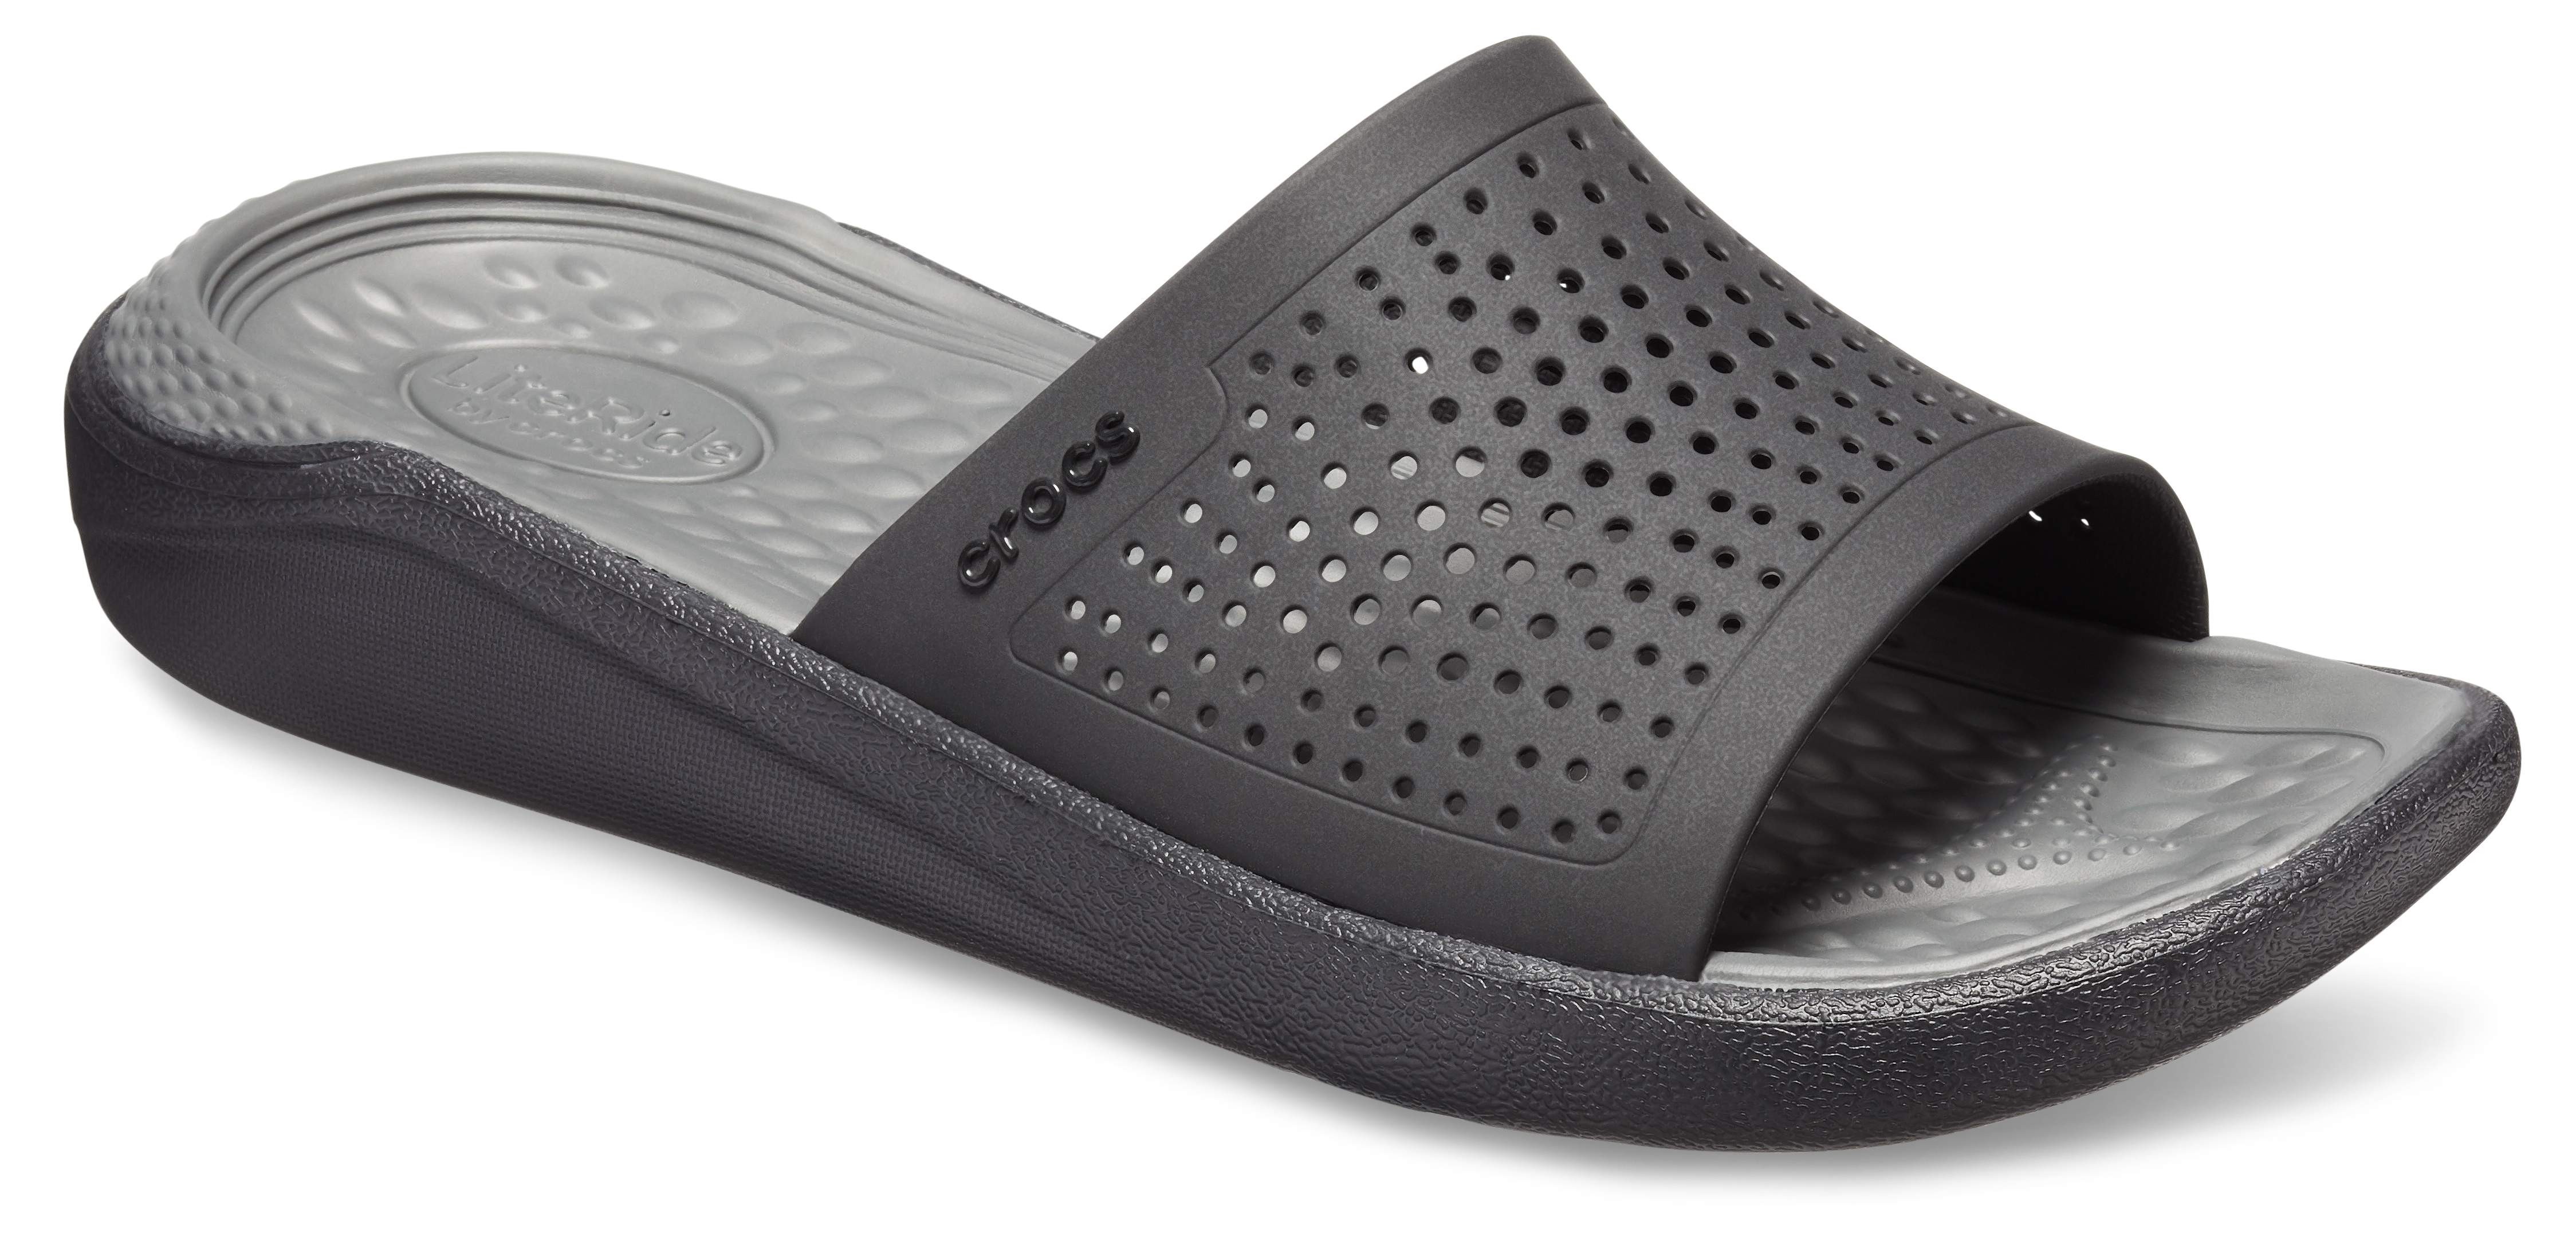 crocs model sandals